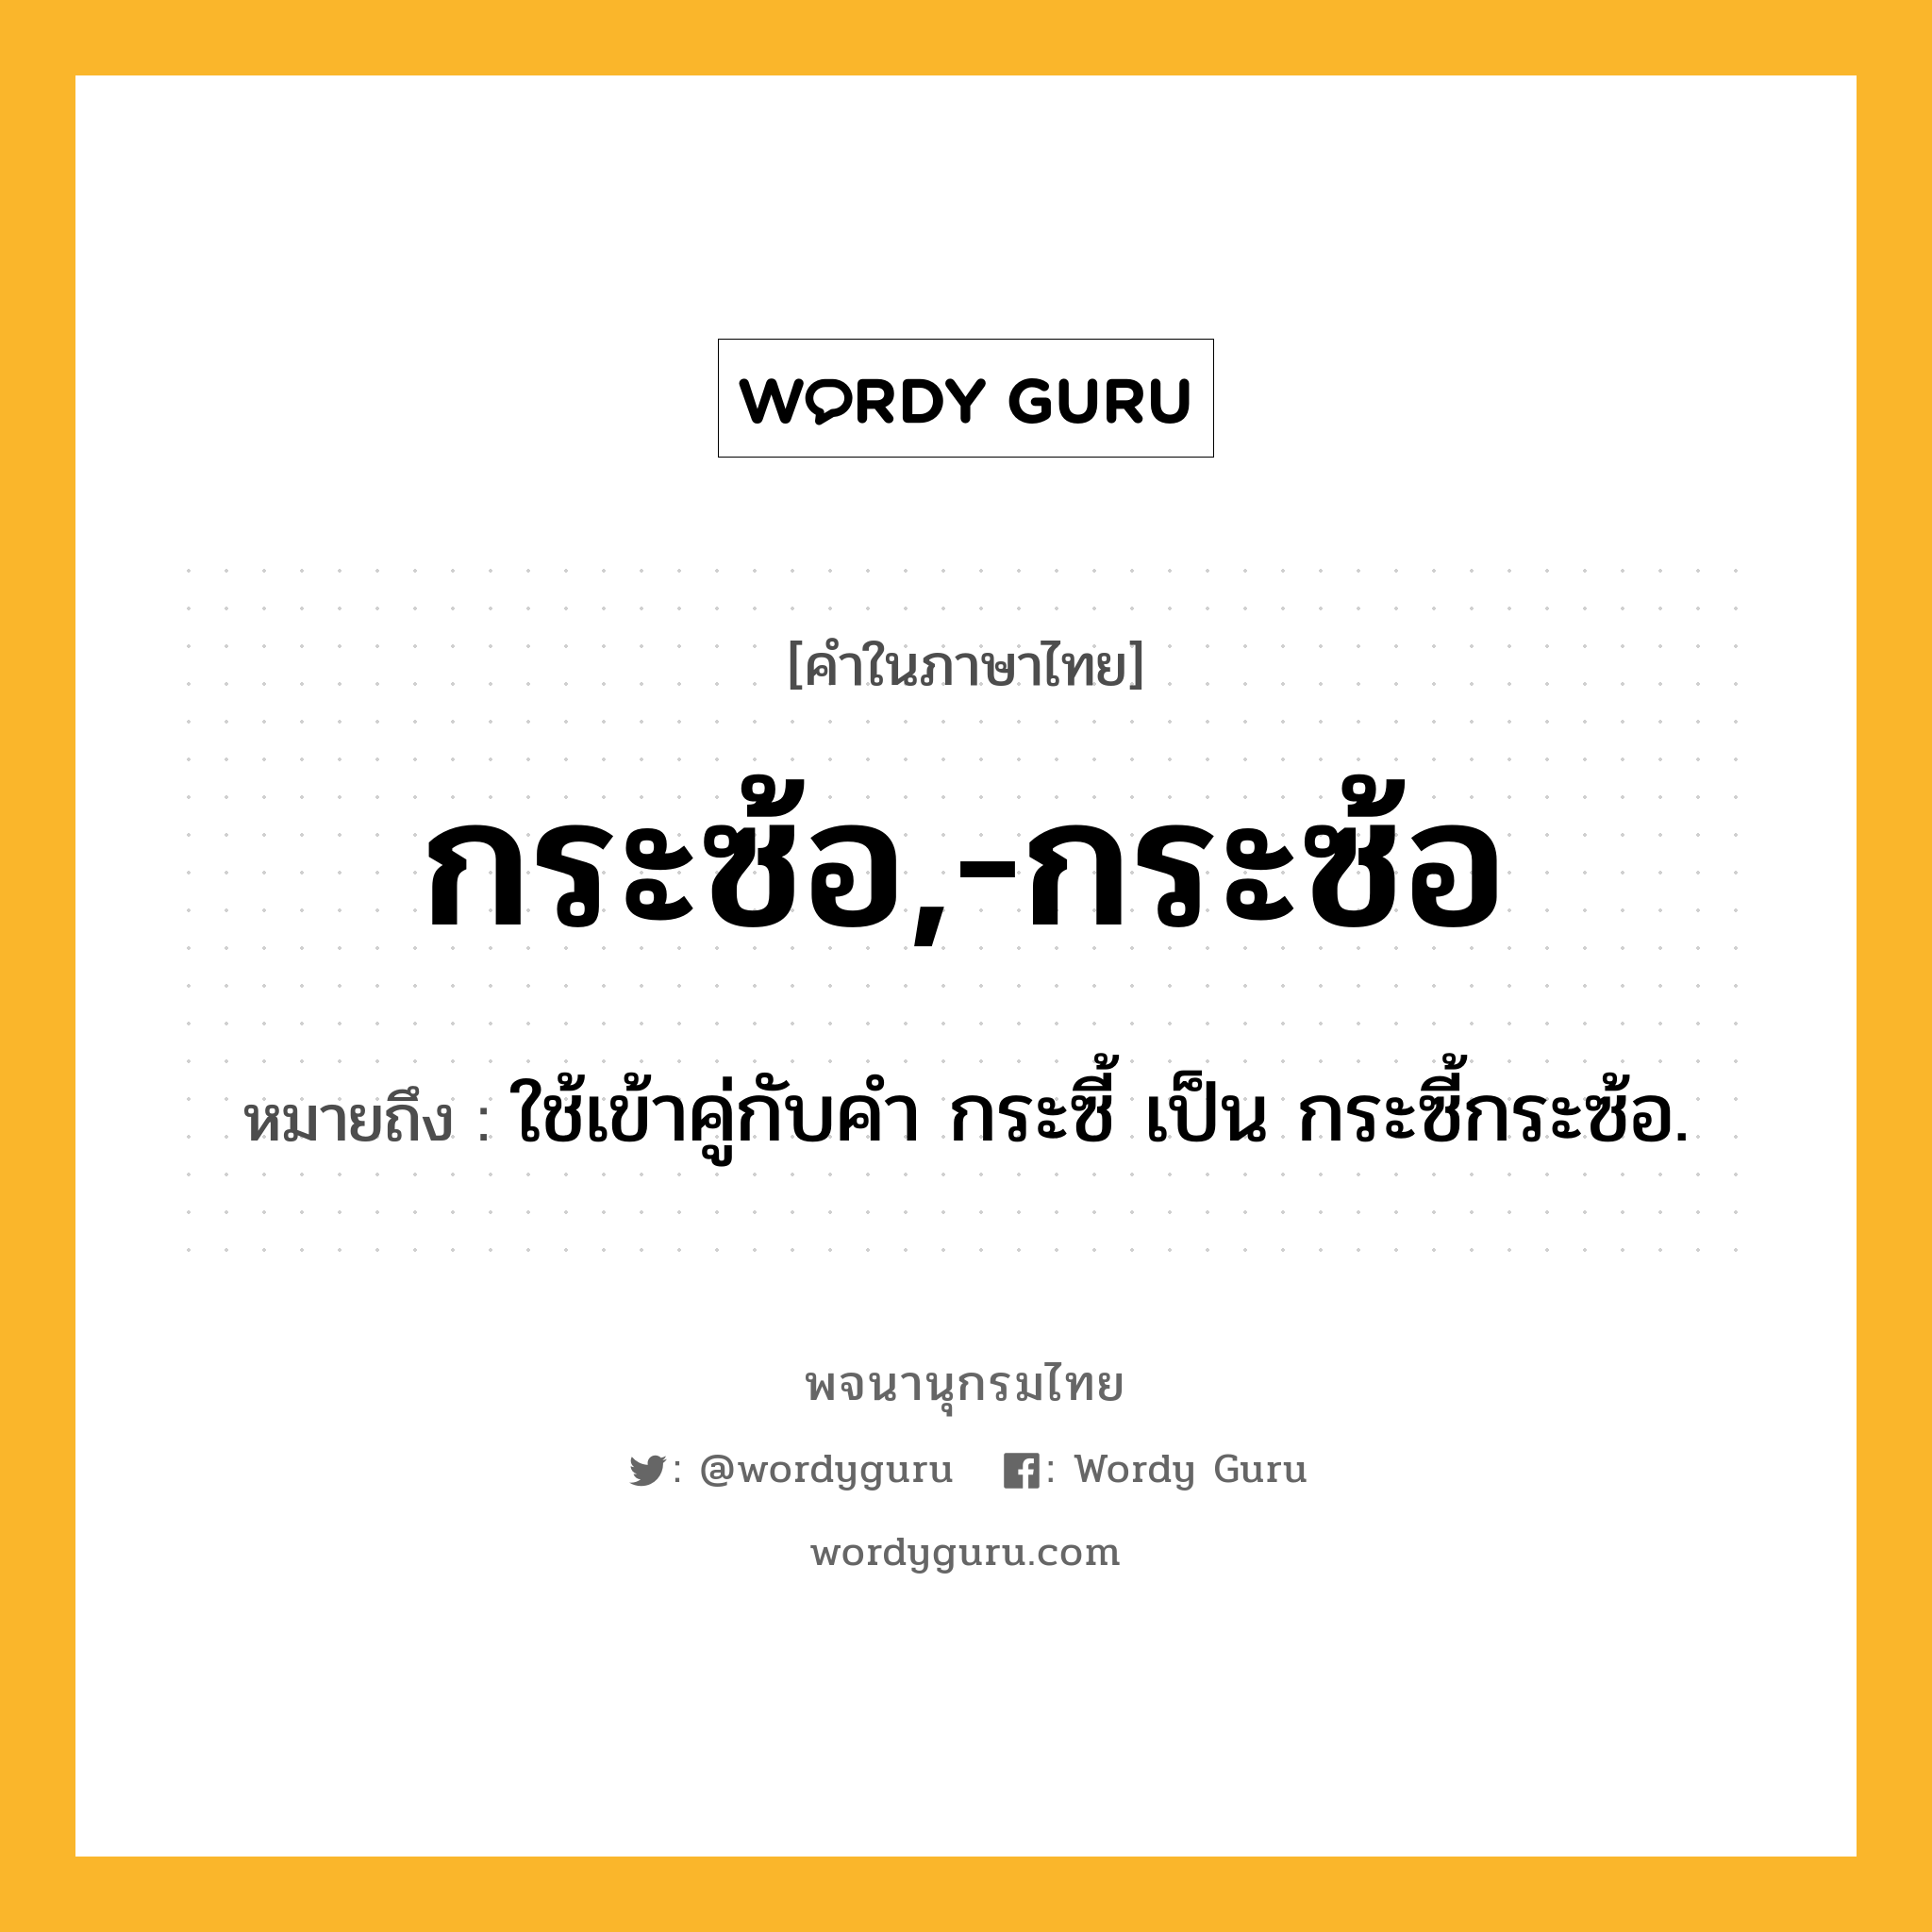 กระซ้อ,-กระซ้อ ความหมาย หมายถึงอะไร?, คำในภาษาไทย กระซ้อ,-กระซ้อ หมายถึง ใช้เข้าคู่กับคํา กระซี้ เป็น กระซี้กระซ้อ.